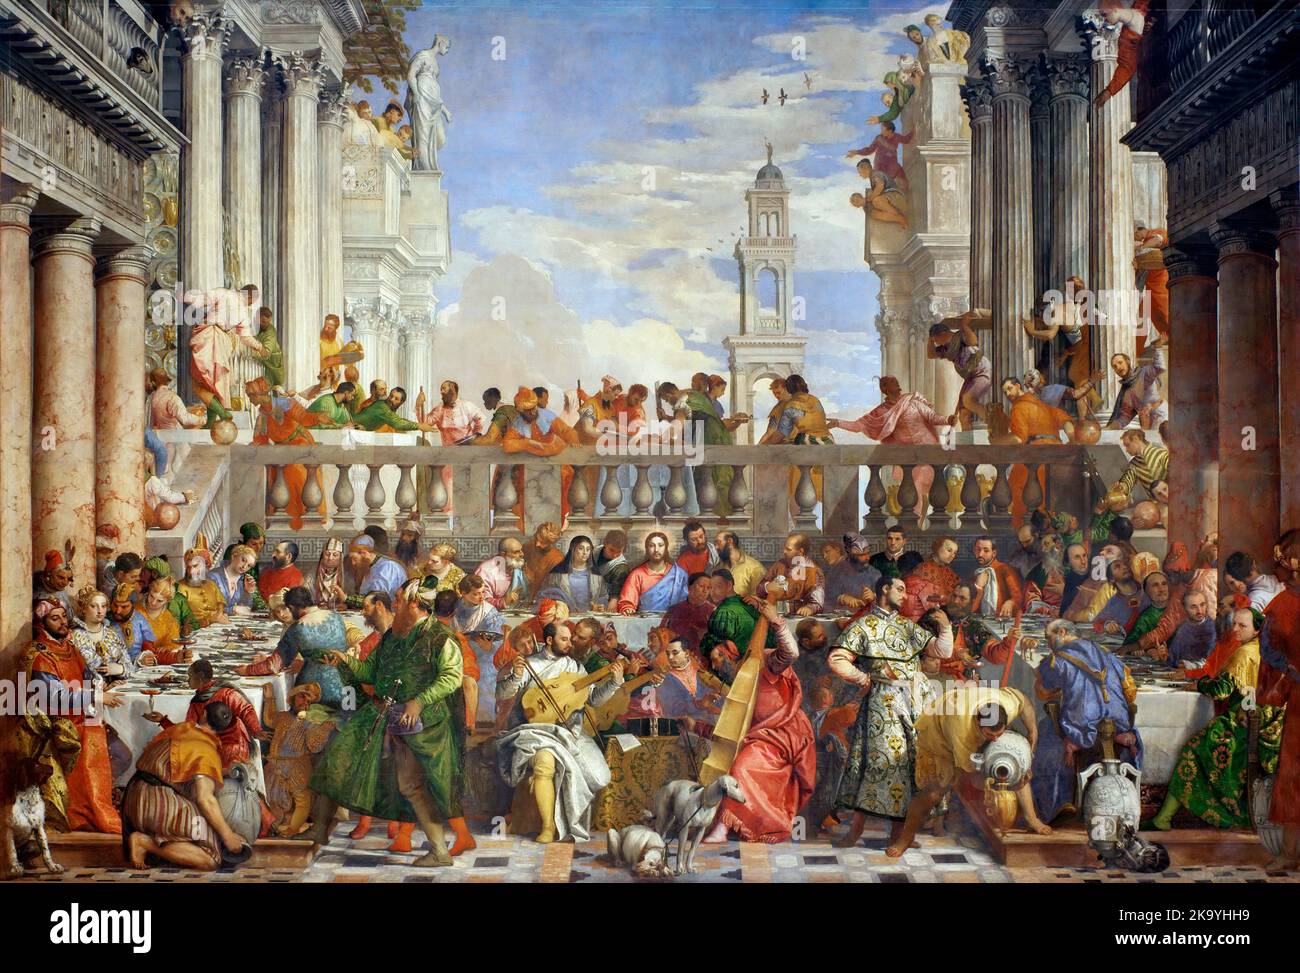 Die Hochzeit zu Kana (1563), von Paolo Veronese zeigt die biblische Geschichte der Hochzeit zu Kana, bei der Jesus Wasser in Wein verwandelt Stockfoto